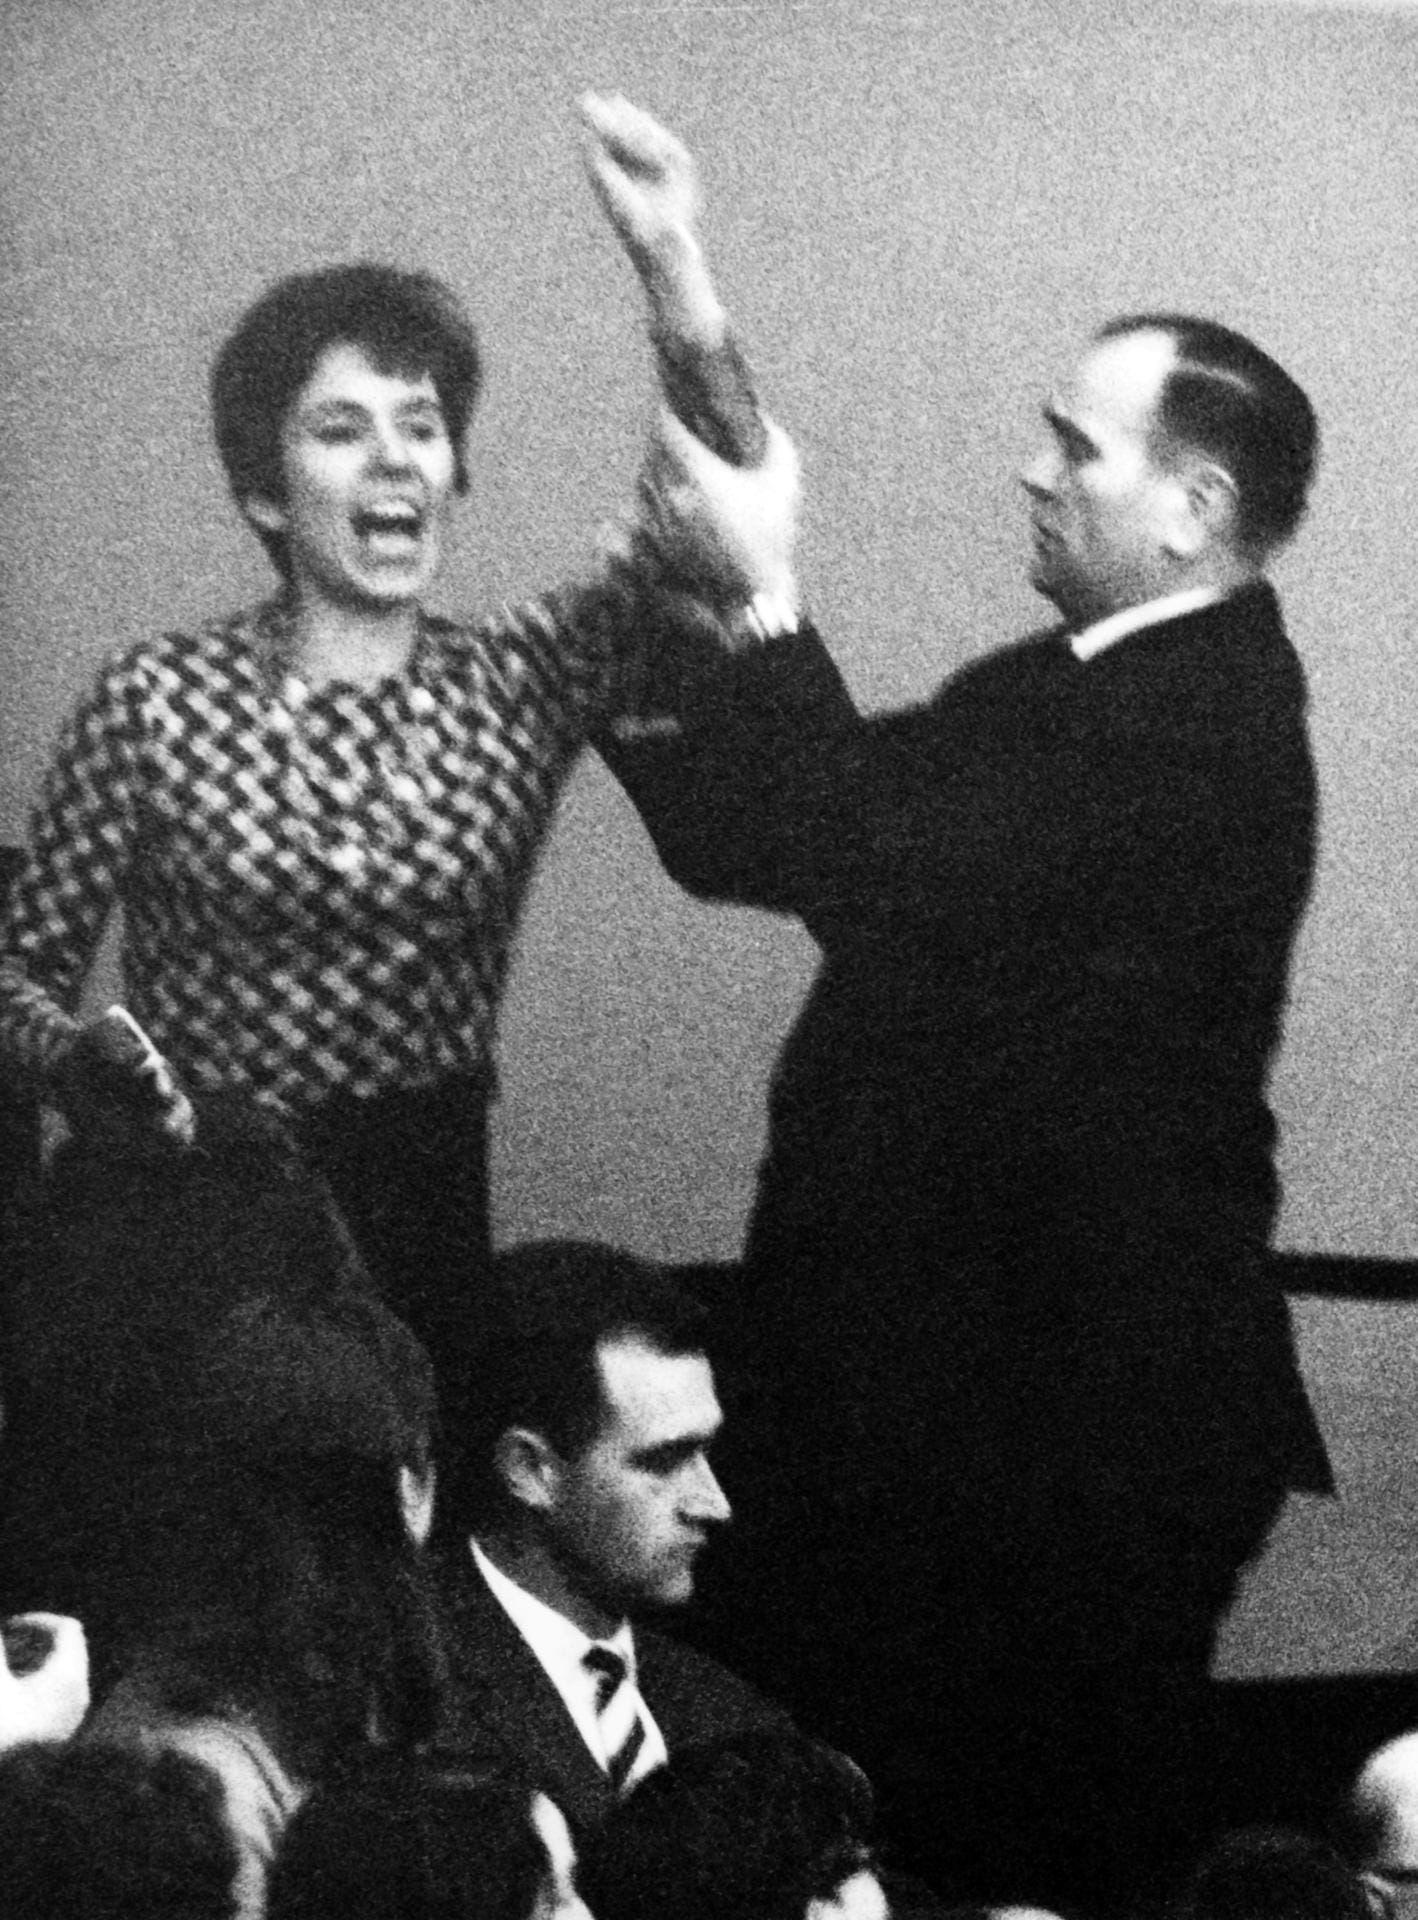 April 1968: Beate Klarsfeld beschimpft während einer Bundestagssitzung von der Zuschauertribüne im Bundestag Bundeskanzler Kiesinger als "Nazi" und "Verbrecher".